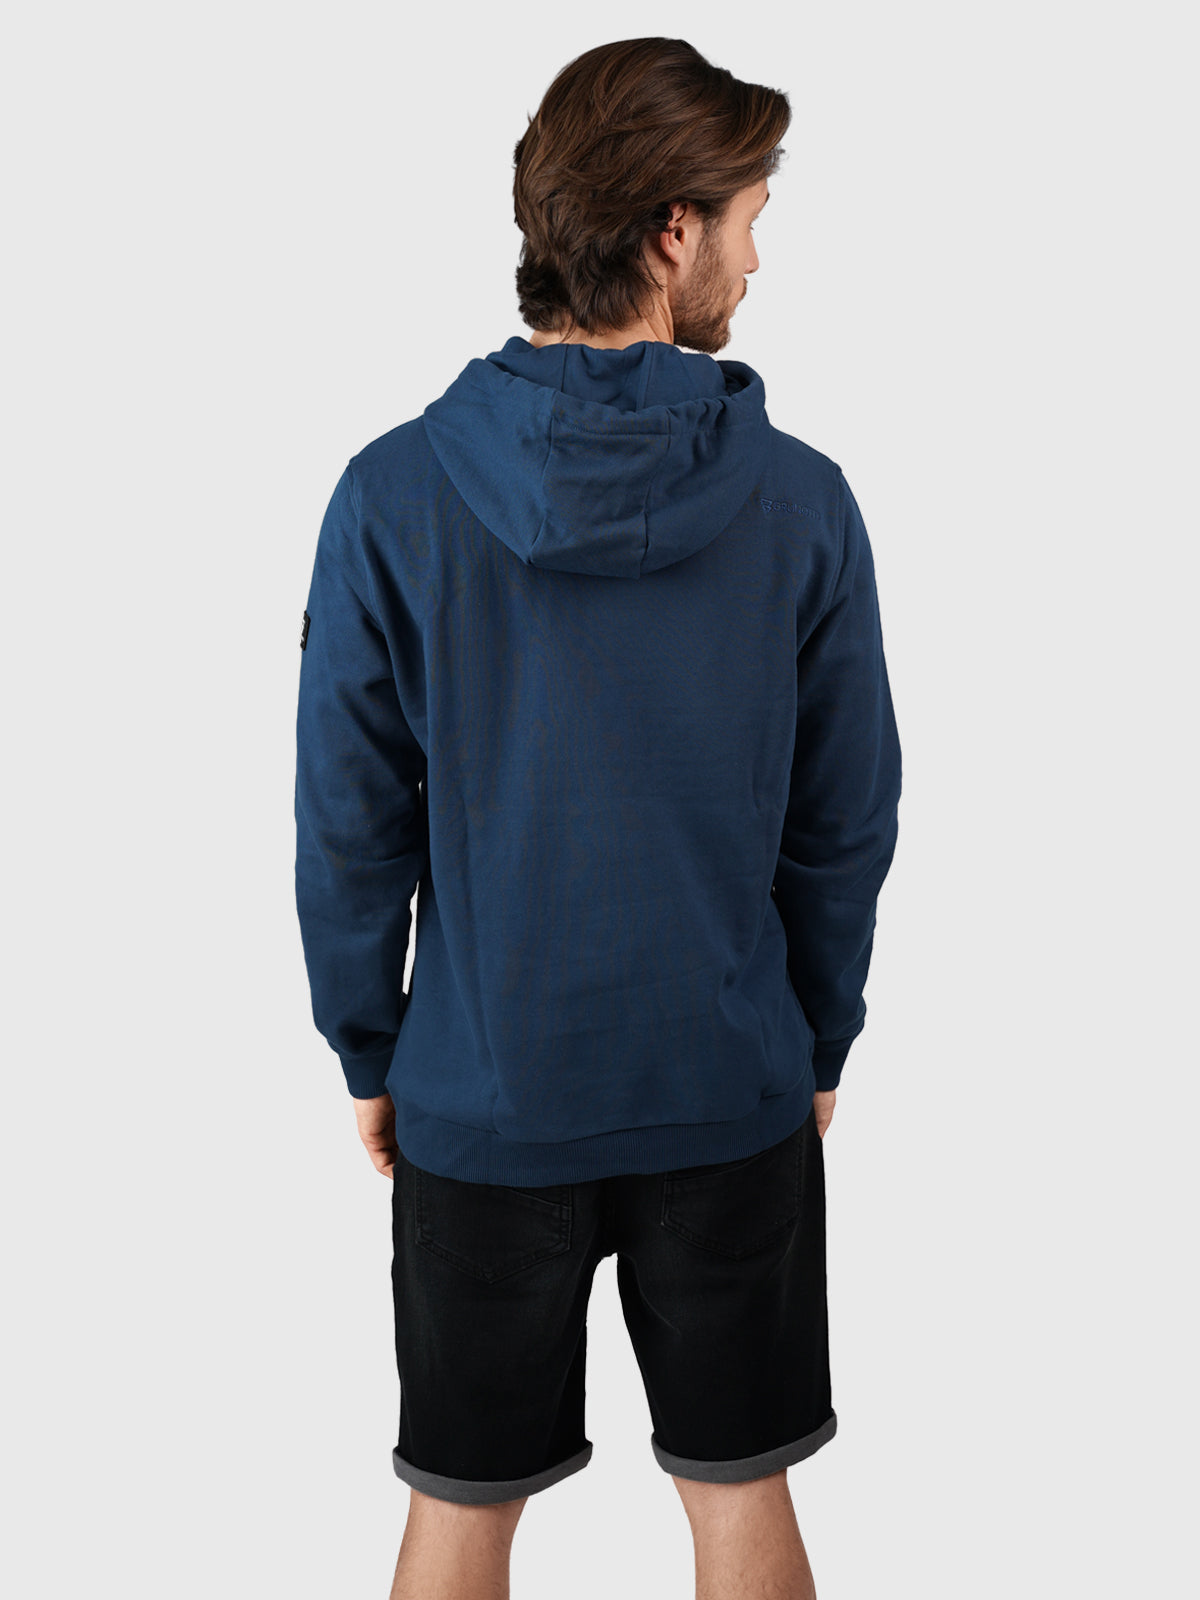 Patcher-N Herren Sweatshirt | Blau
